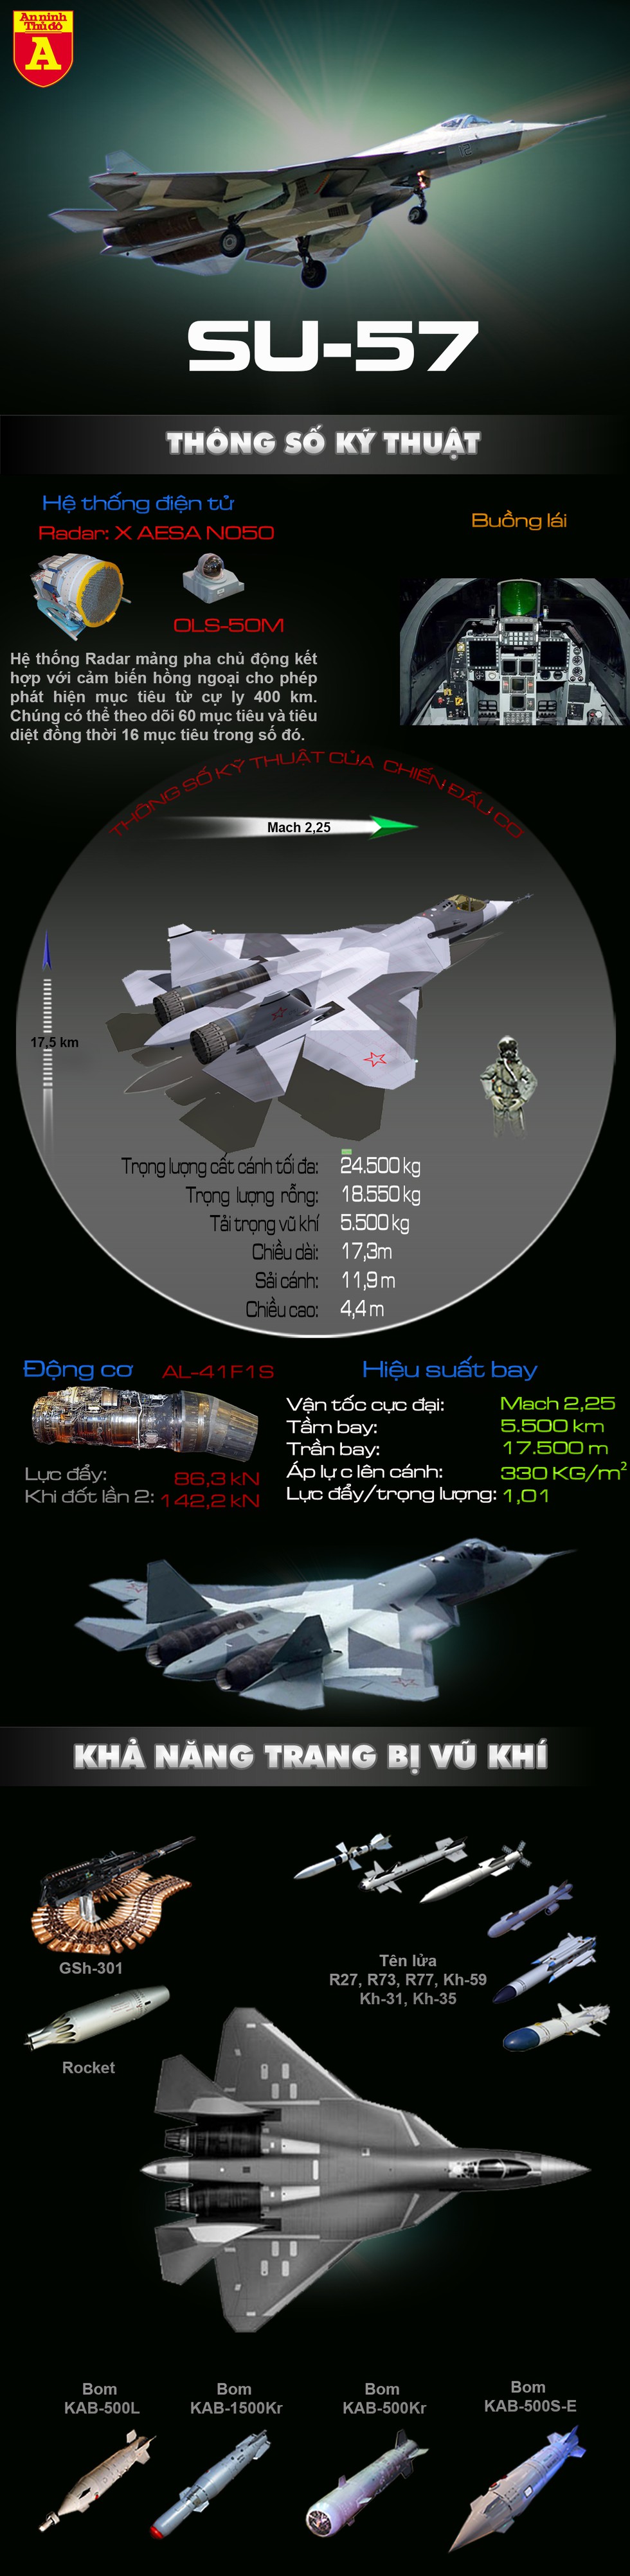 [Infographics] Giá Su-57E cao gấp 3 lần F-35, nhưng khách vẫn sẽ đổ tới mua vì sao? - Ảnh 1